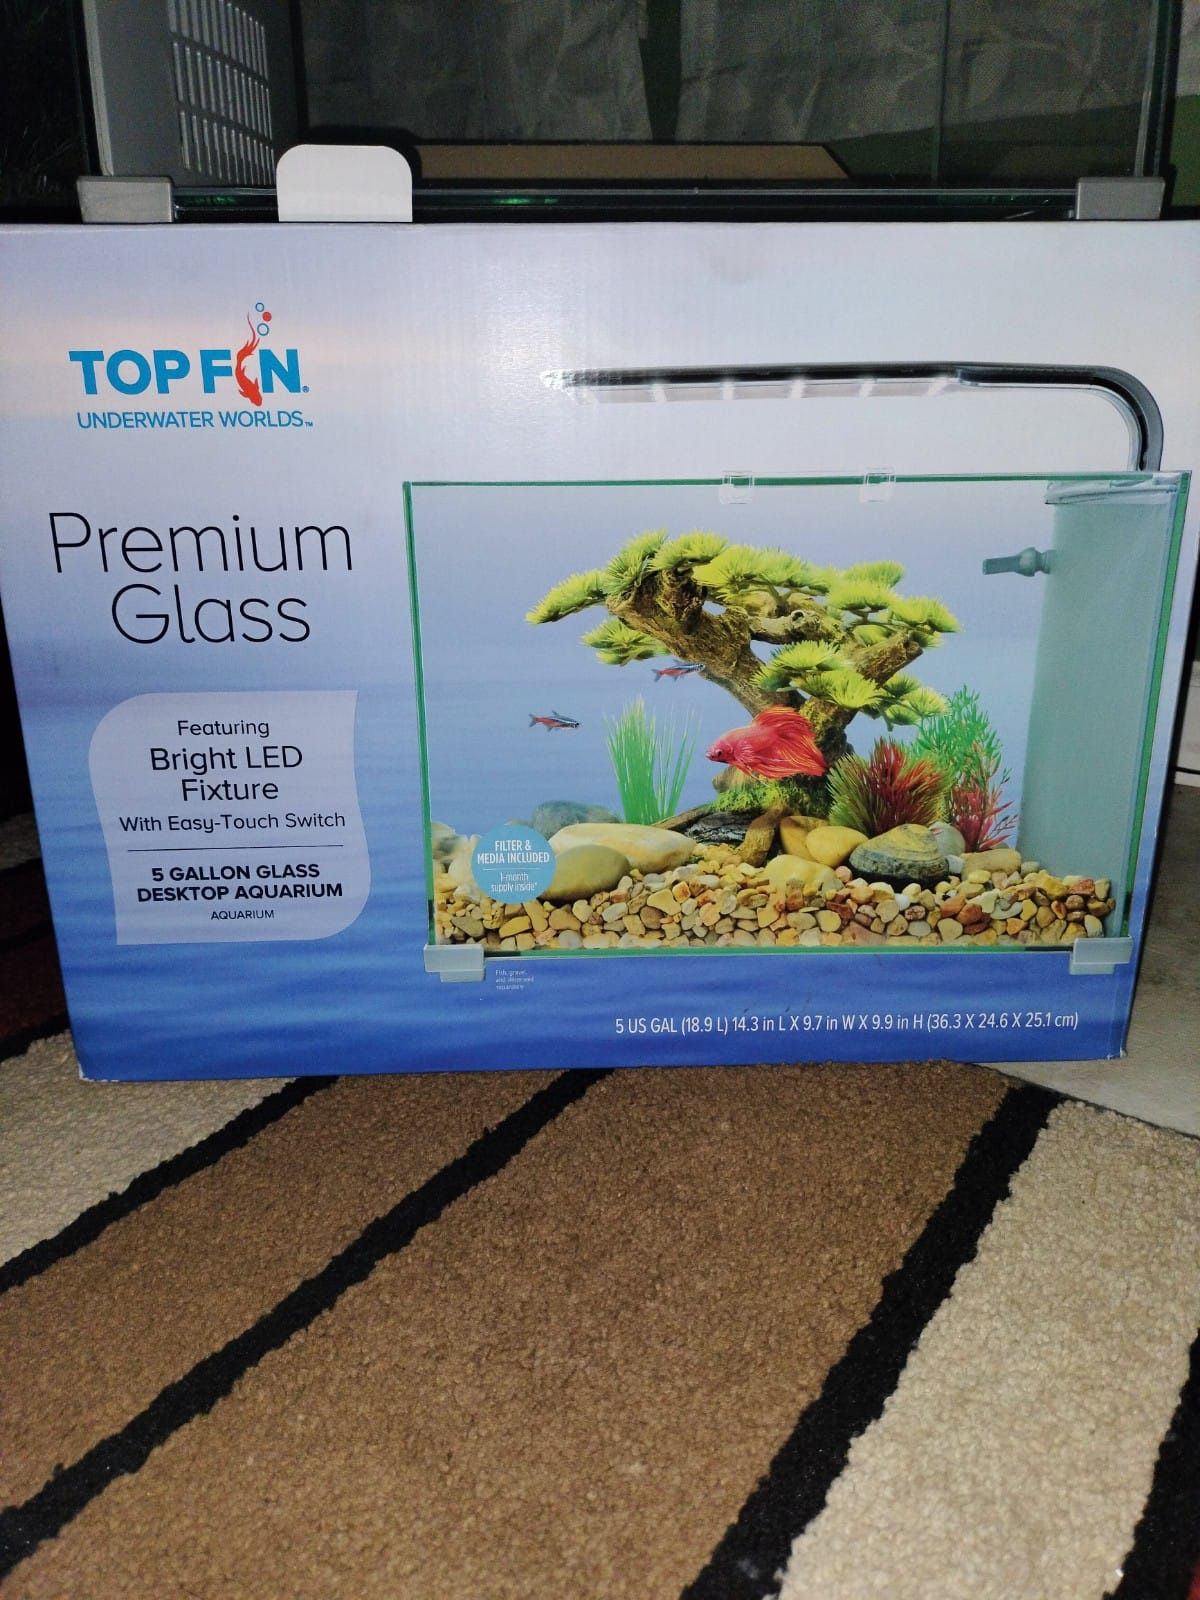 Top Fin Premium Glass Aquarium - 5 Gallon